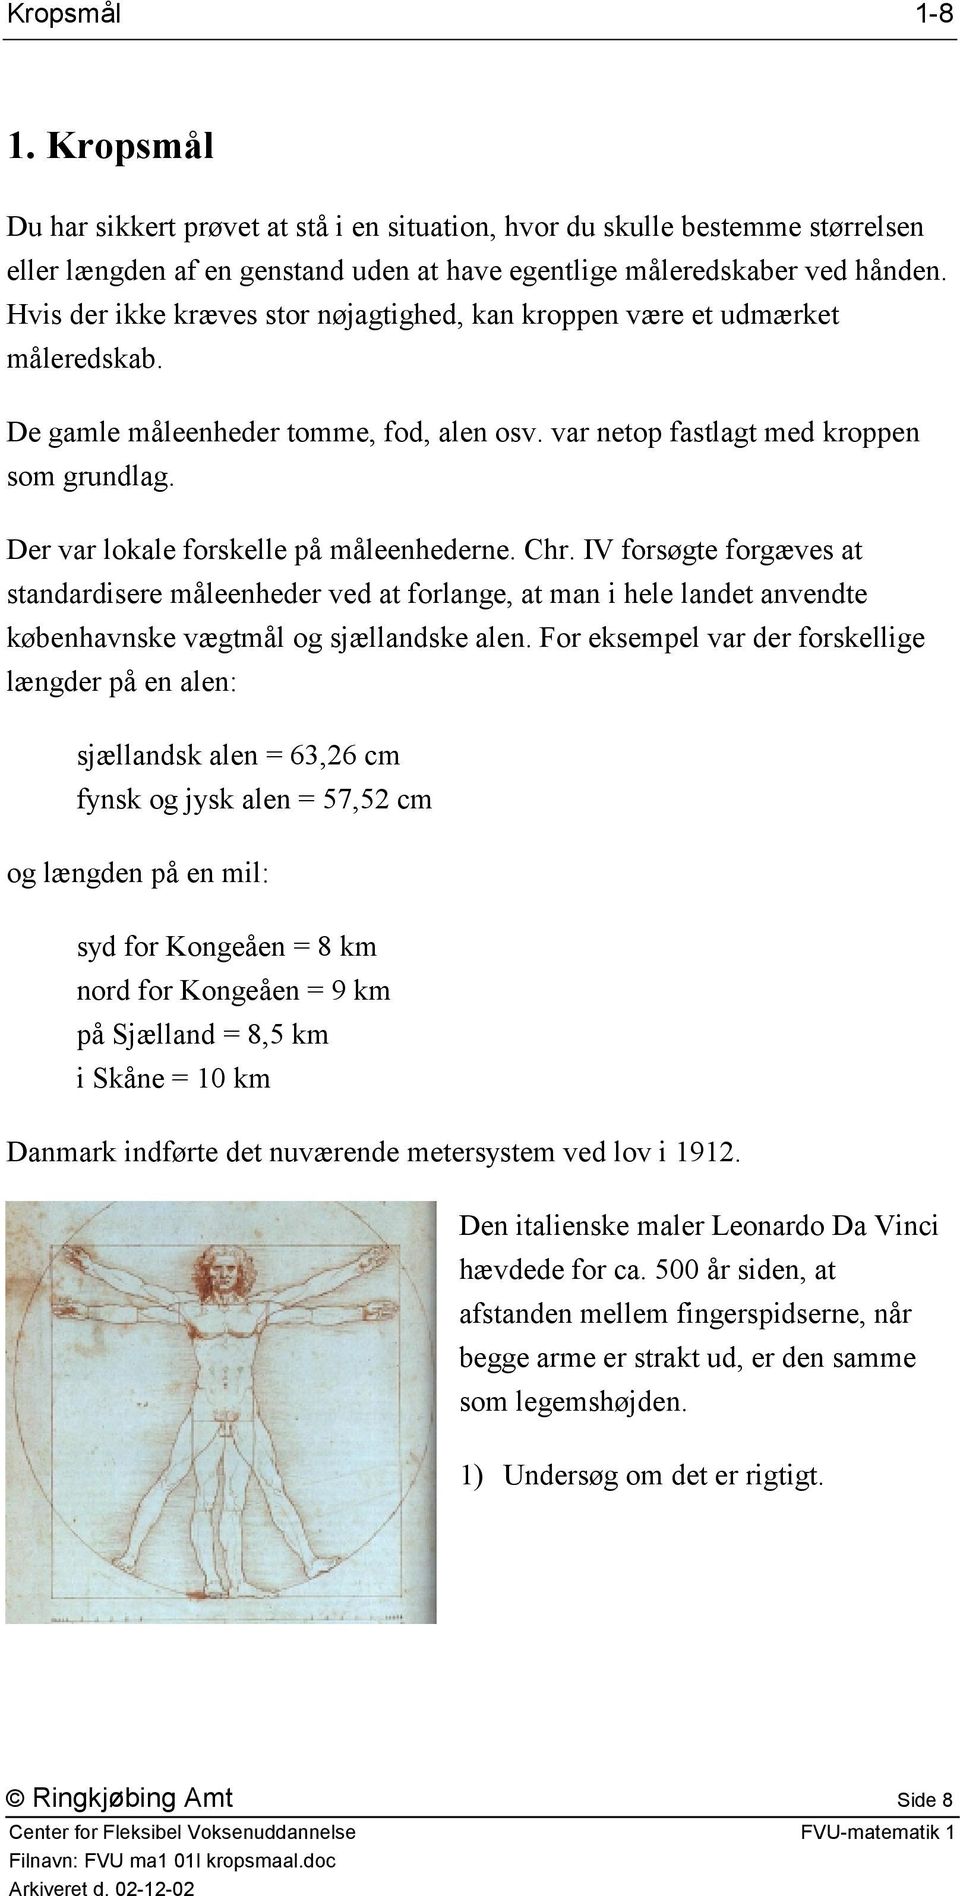 Der var lokale forskelle på måleenhederne. Chr. IV forsøgte forgæves at standardisere måleenheder ved at forlange, at man i hele landet anvendte københavnske vægtmål og sjællandske alen.